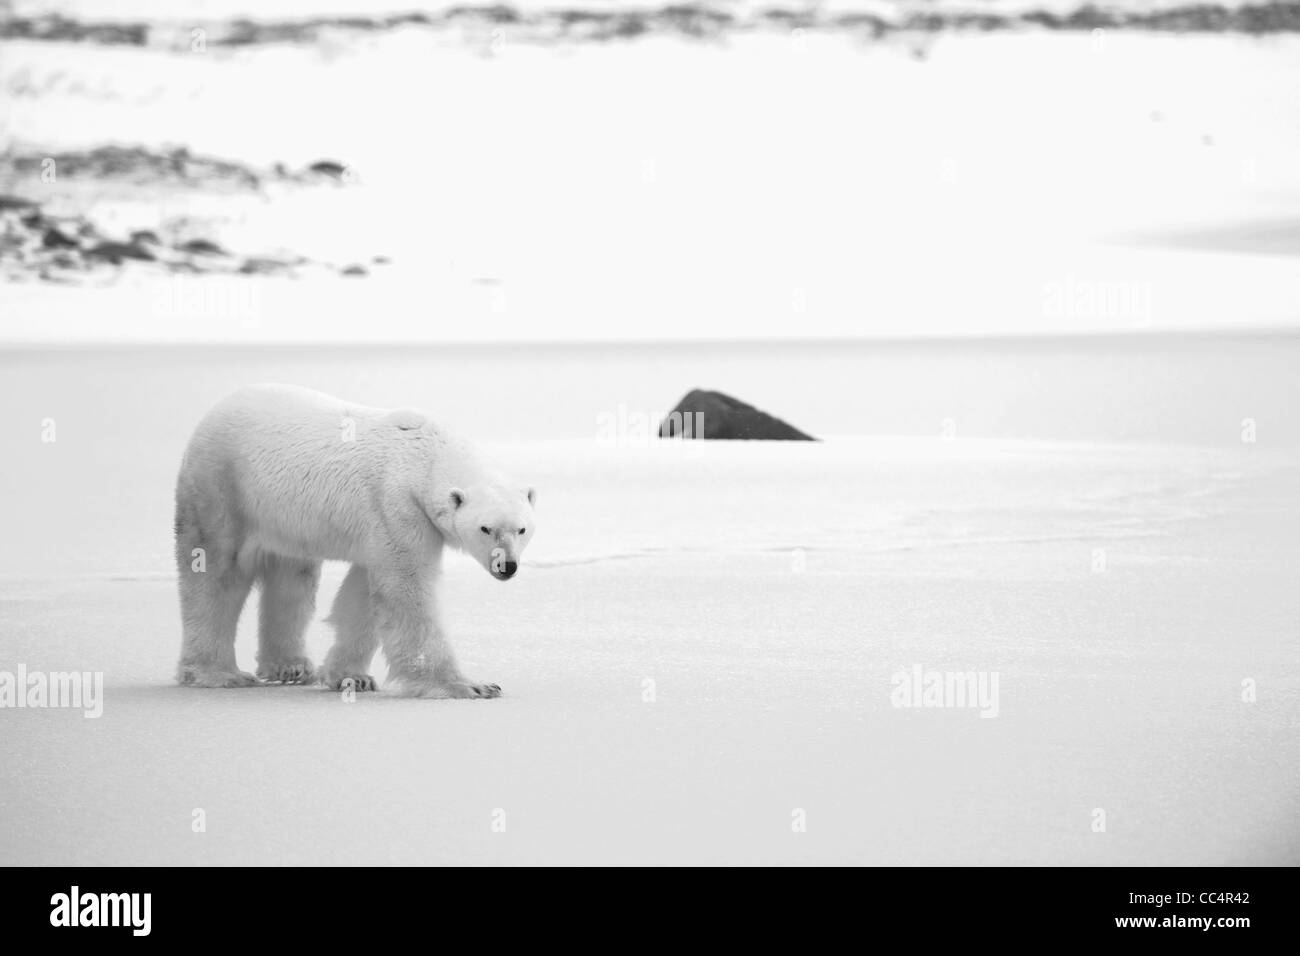 Eisbär auf dem Schnee. Schwarz / weiß Foto. Stockfoto